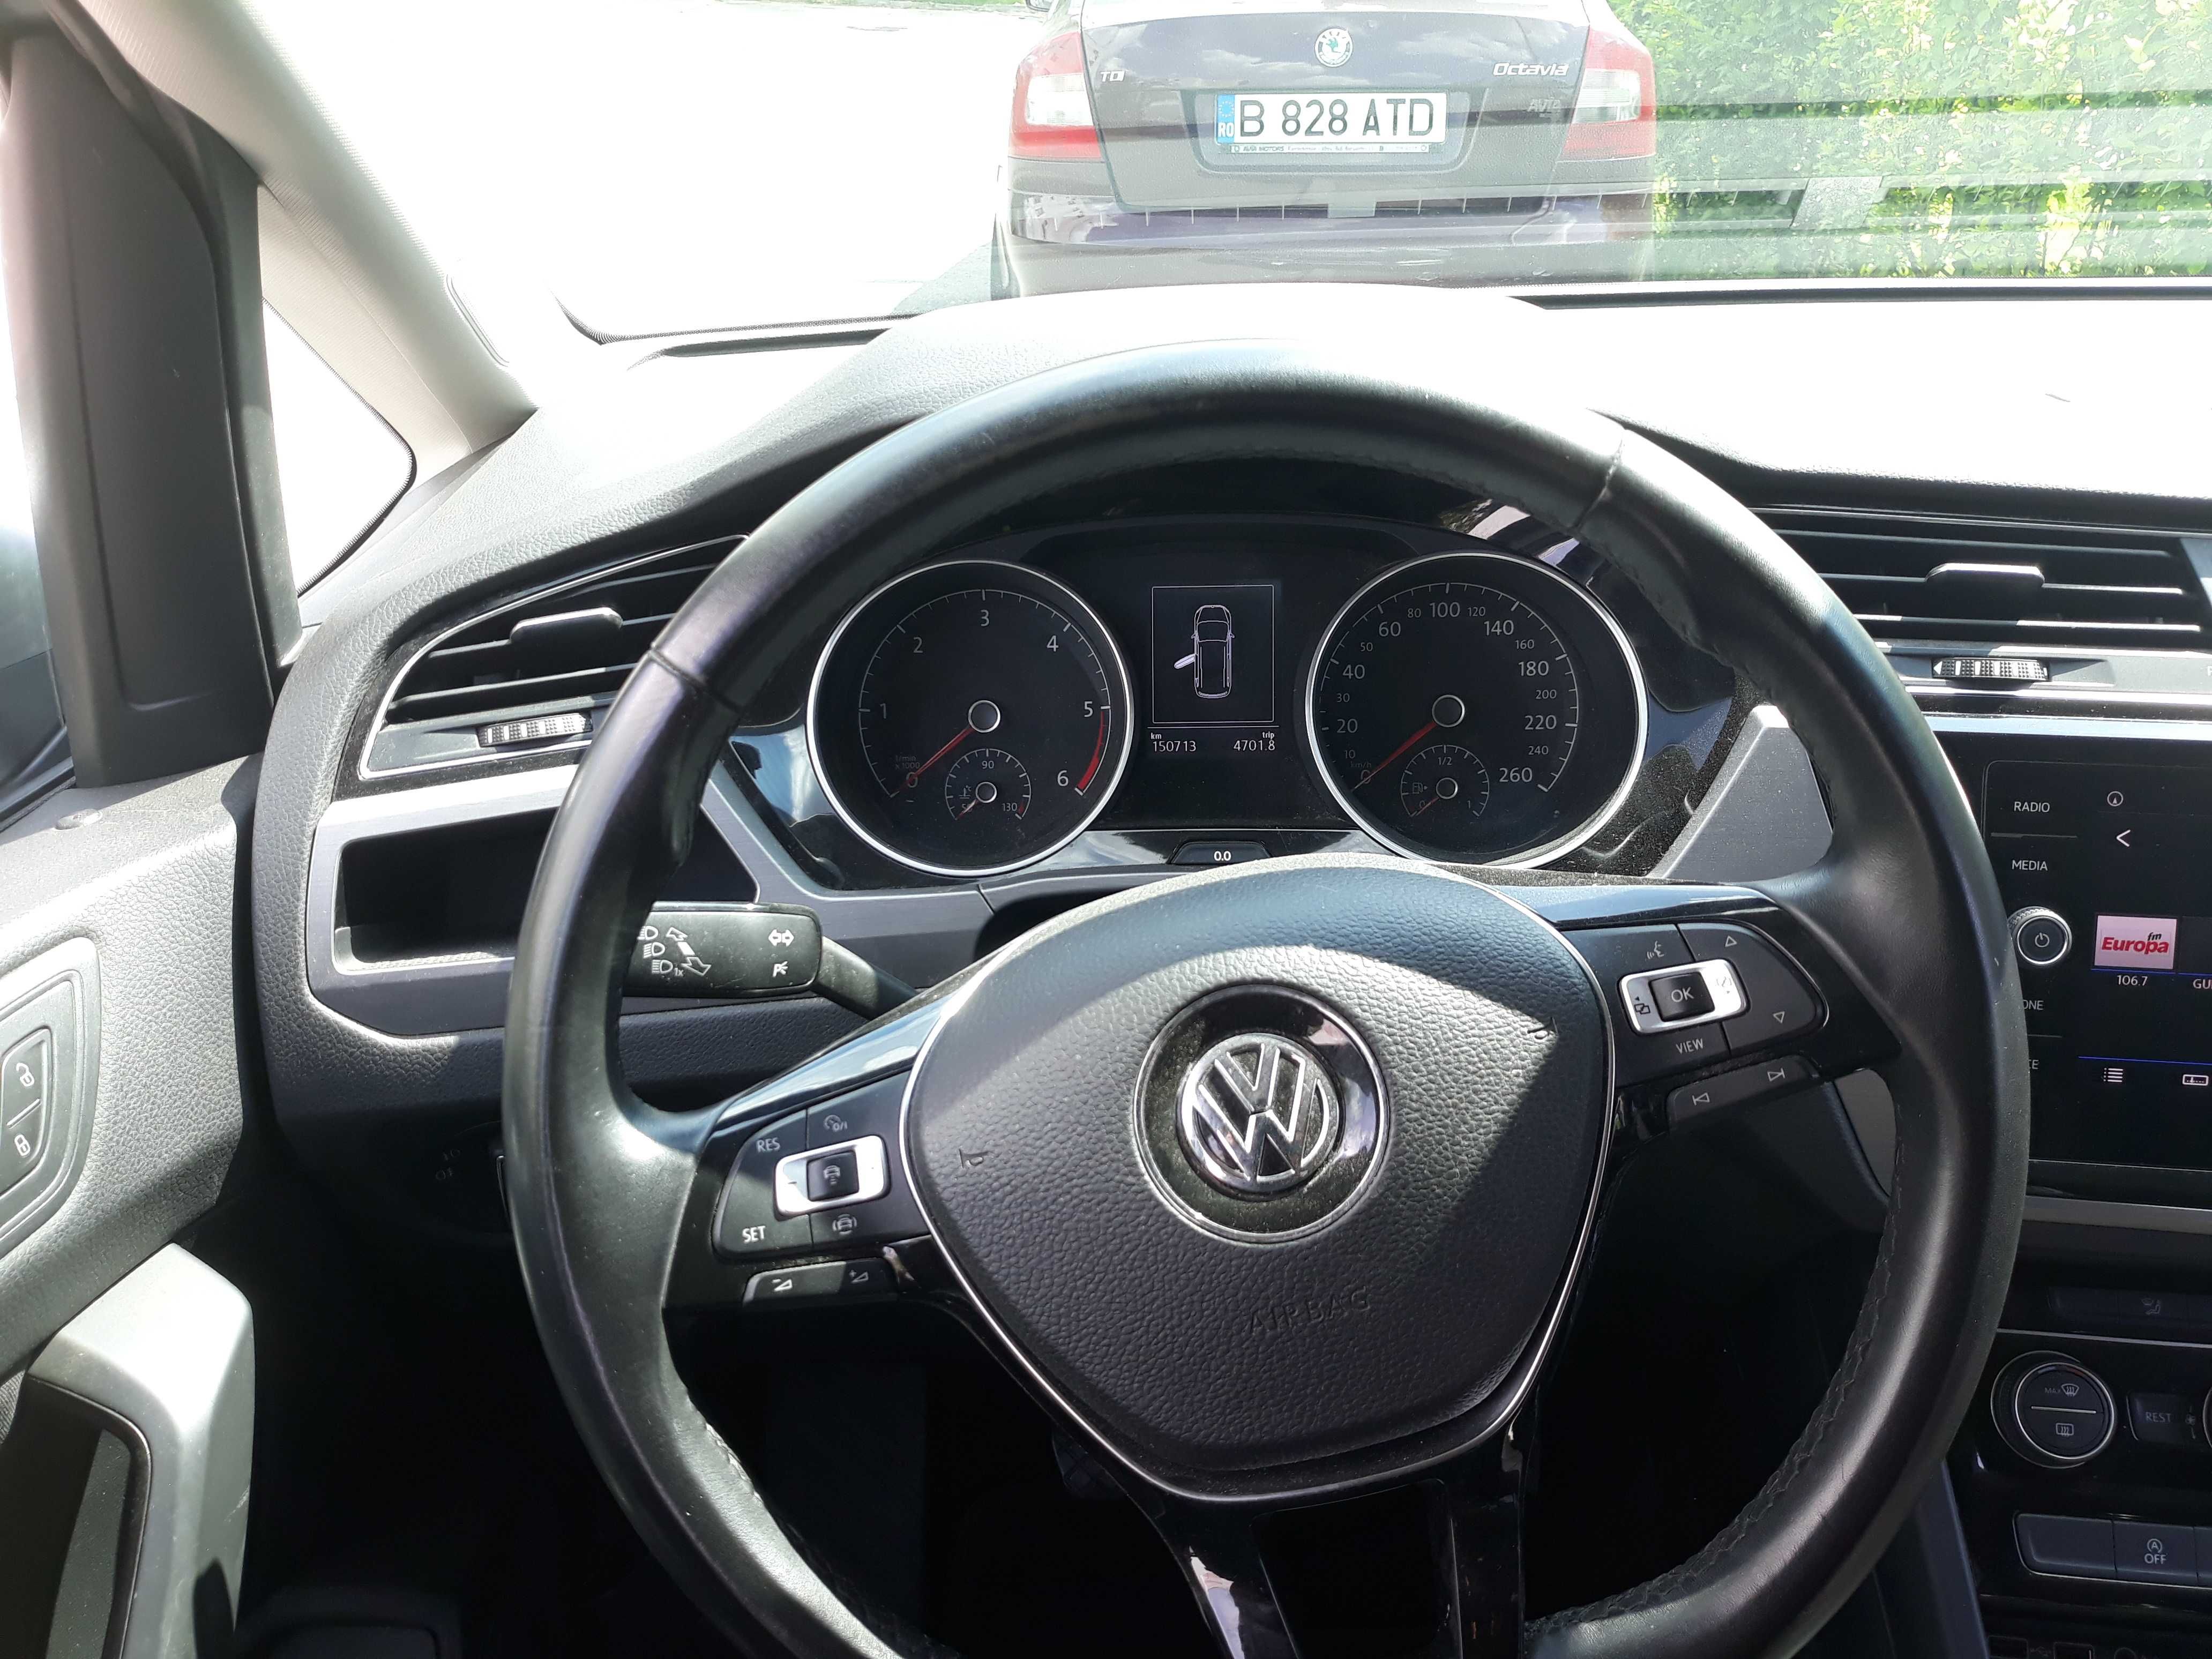 VW Touran 1.6 TDI 2018